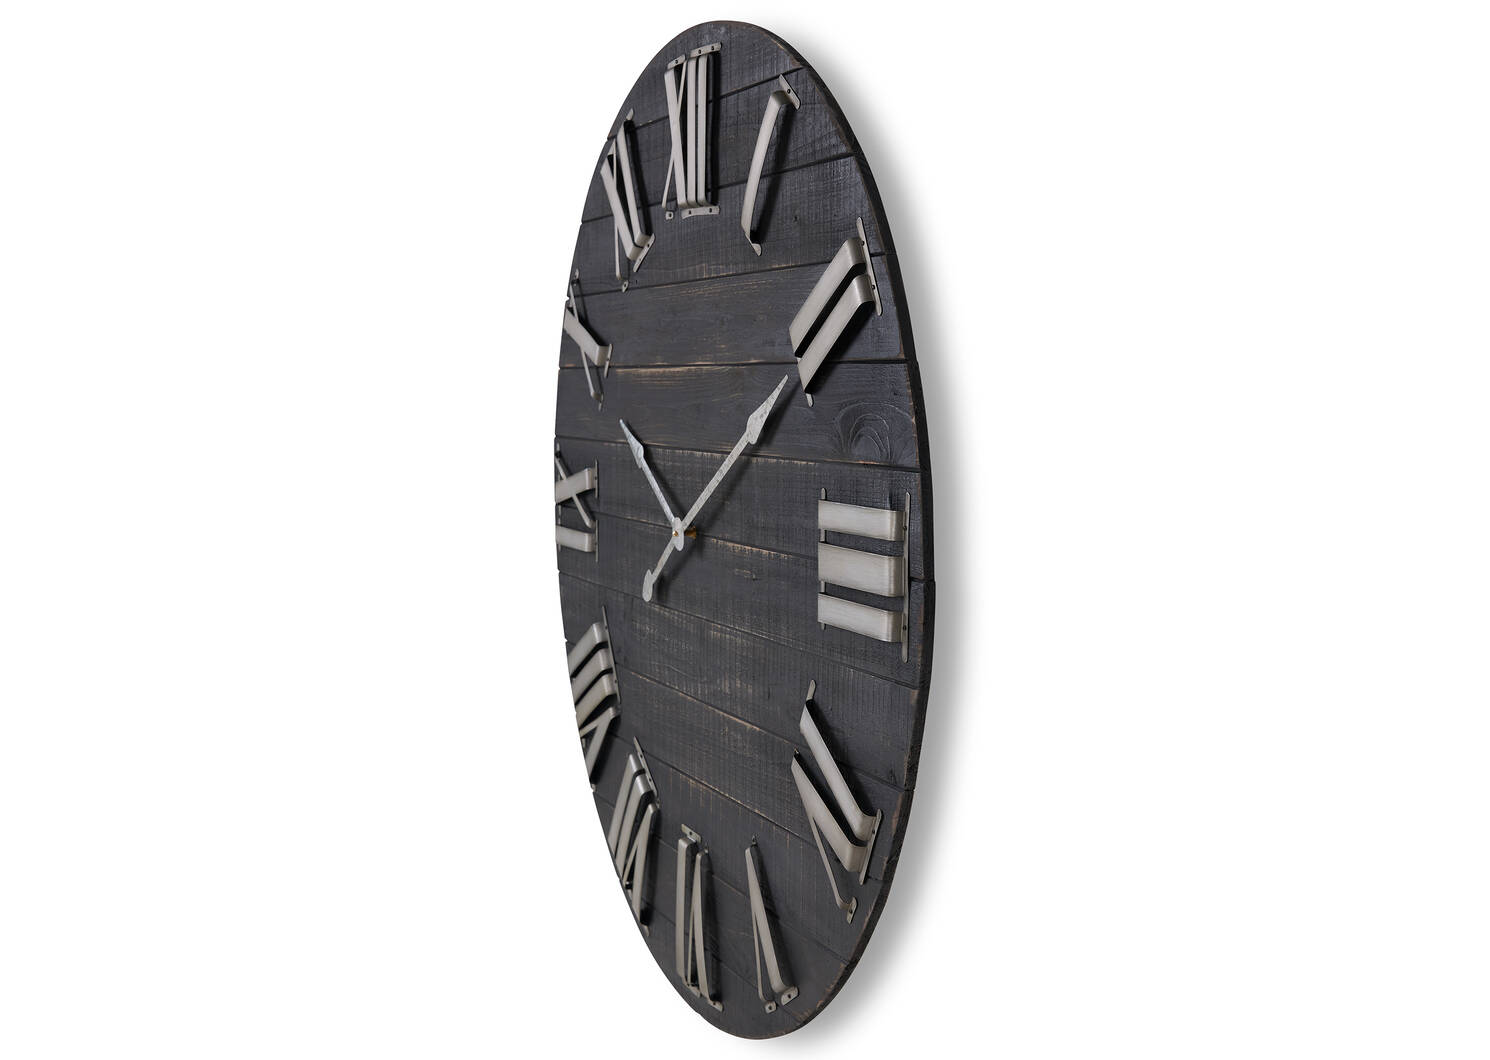 Brayden Wall Clock